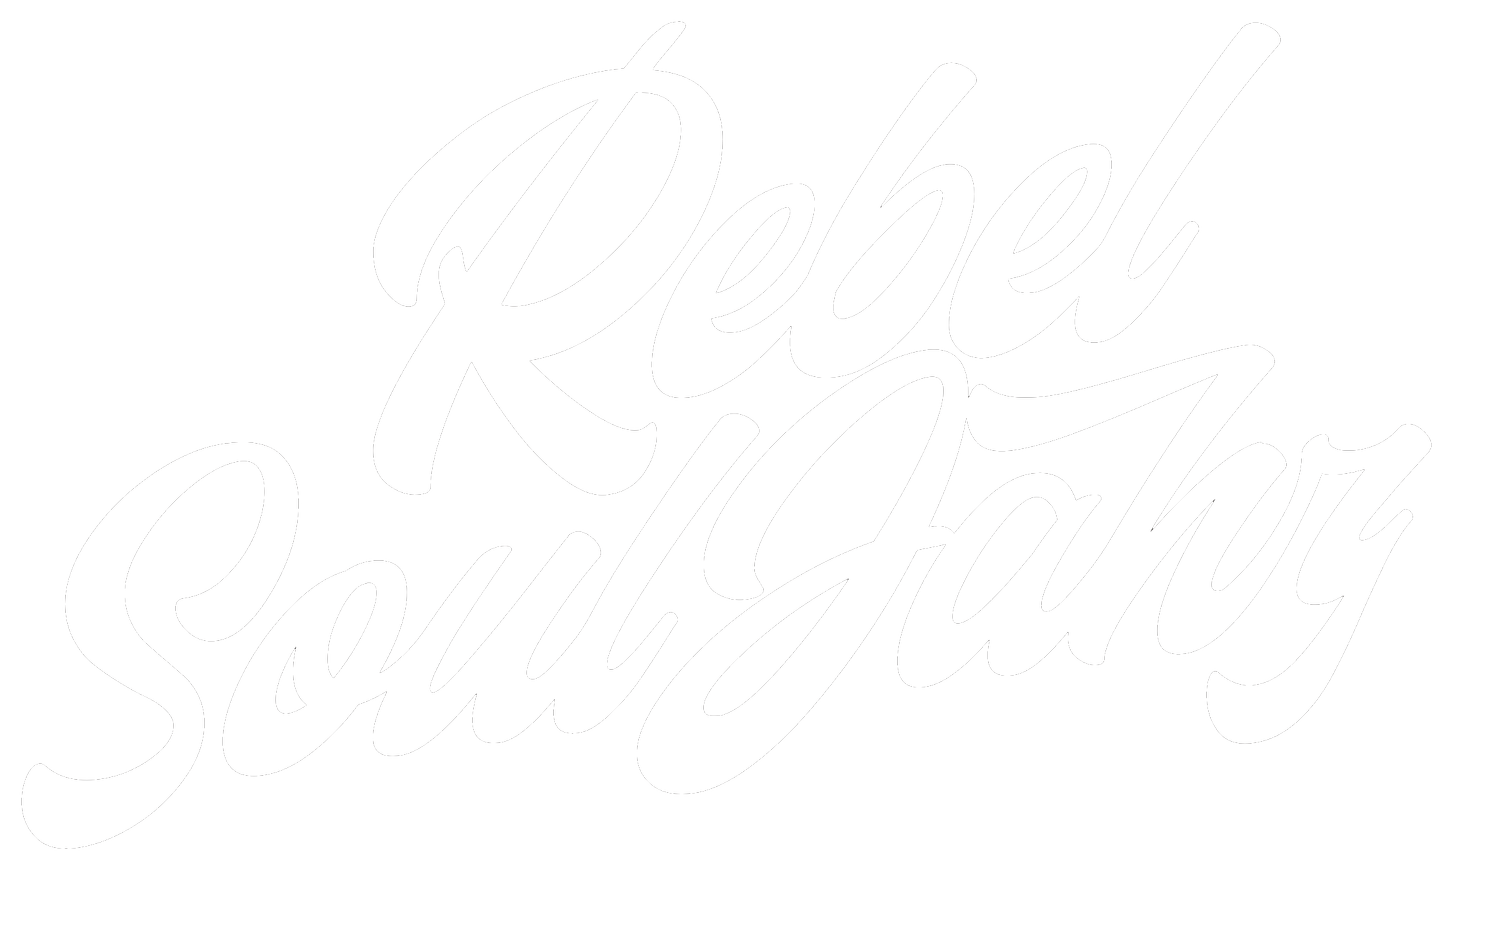 Rebel SoulJahz